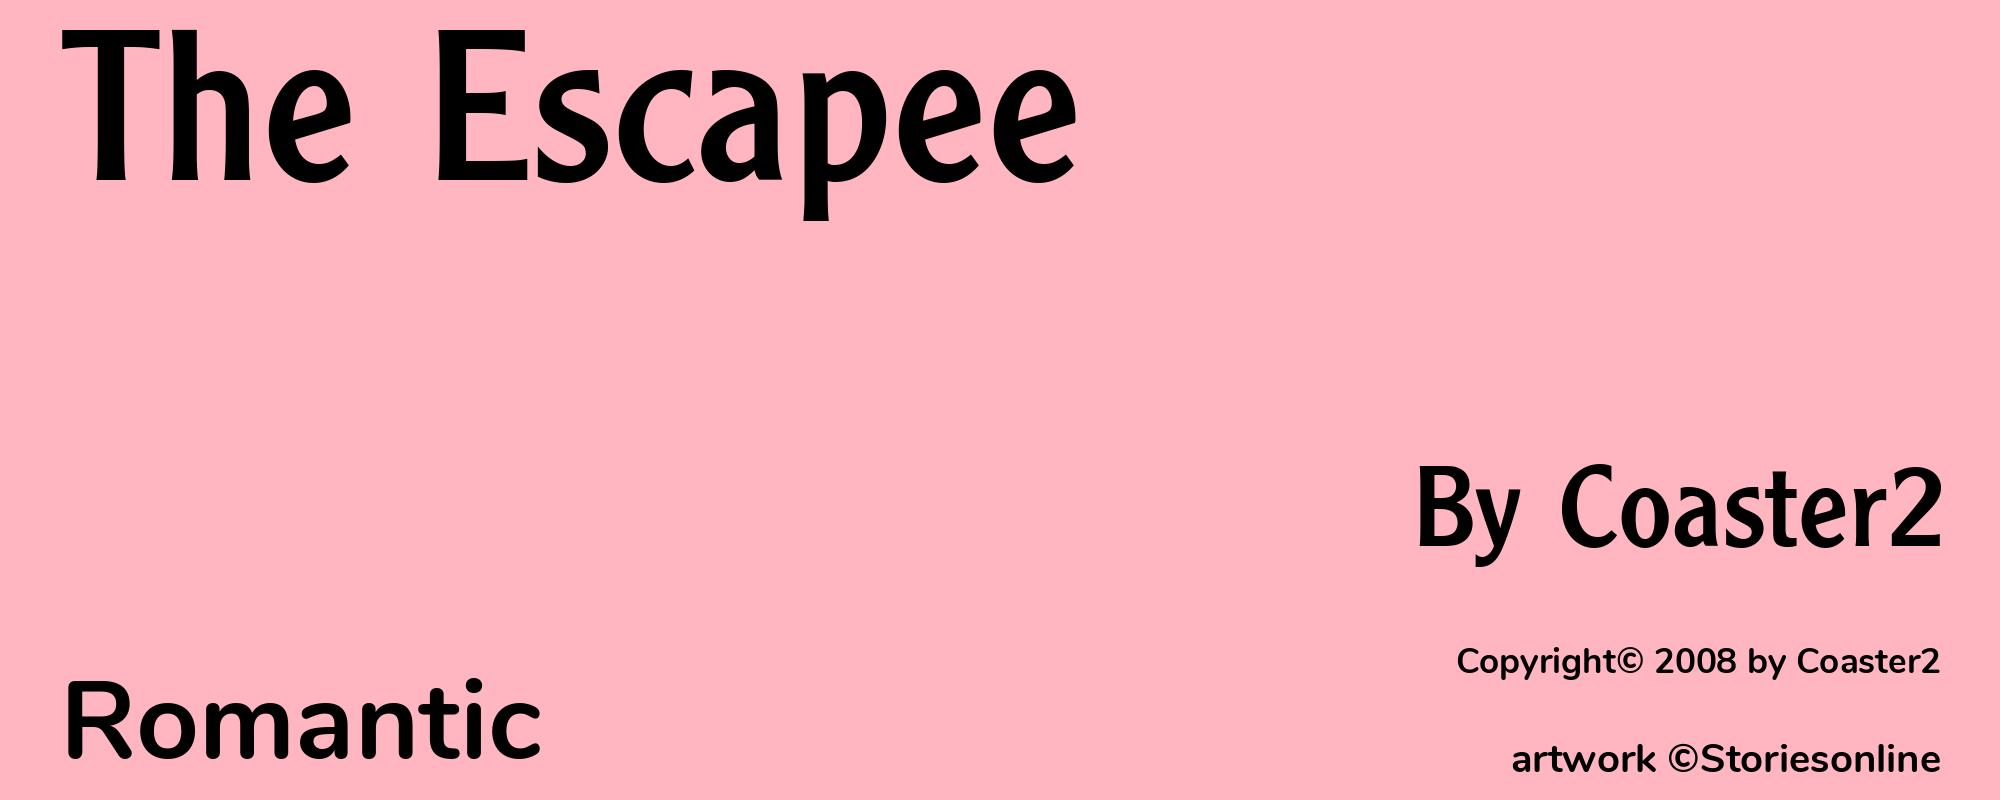 The Escapee - Cover